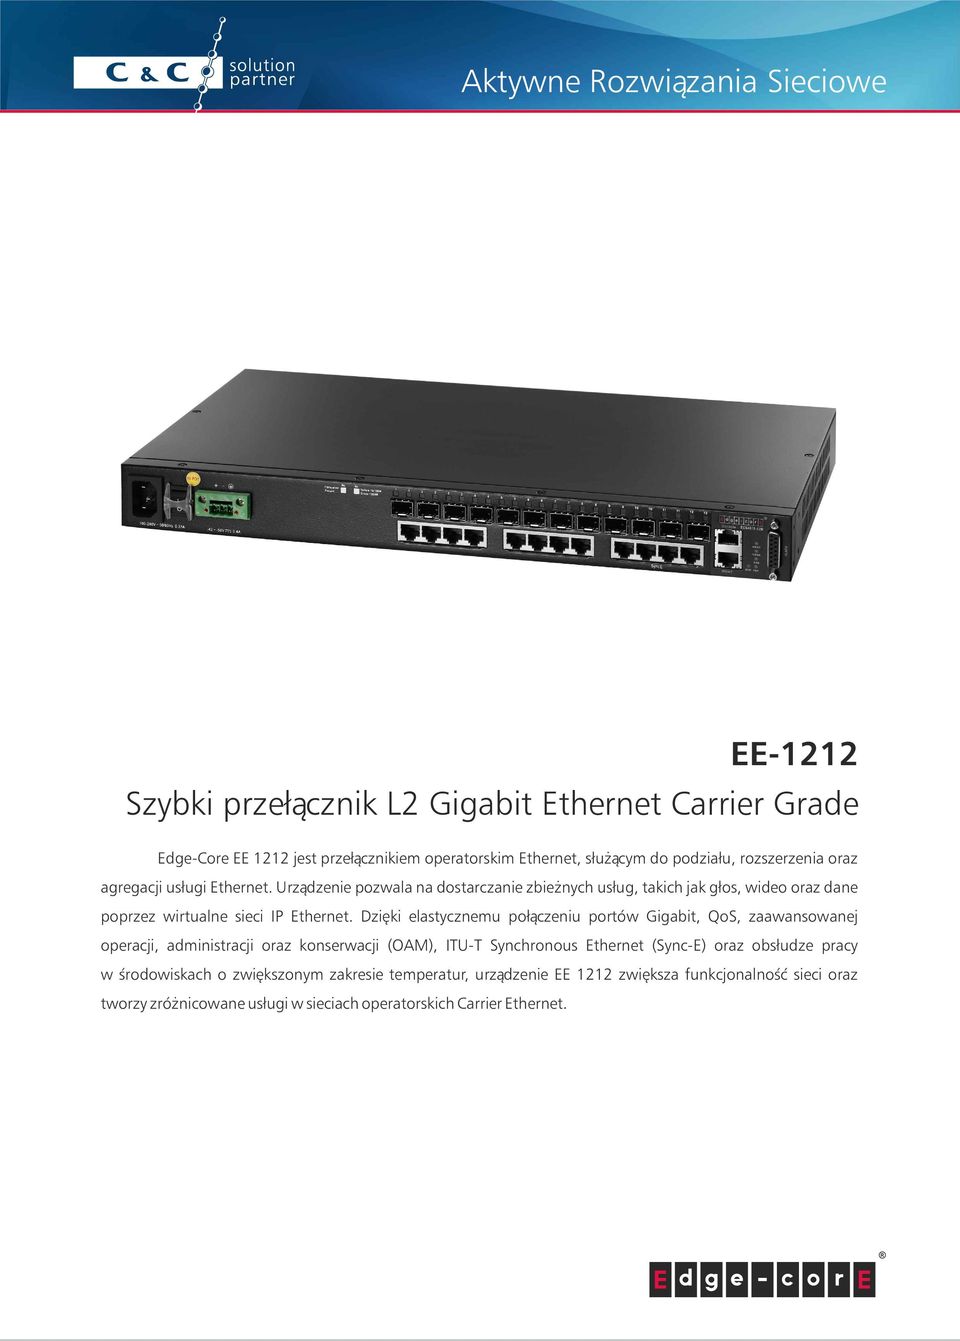 Dzięki elastycznemu połączeniu portów Gigabit, QoS, zaawansowanej operacji, administracji oraz konserwacji (OAM), ITU-T Synchronous Ethernet (Sync-E) oraz obsłudze